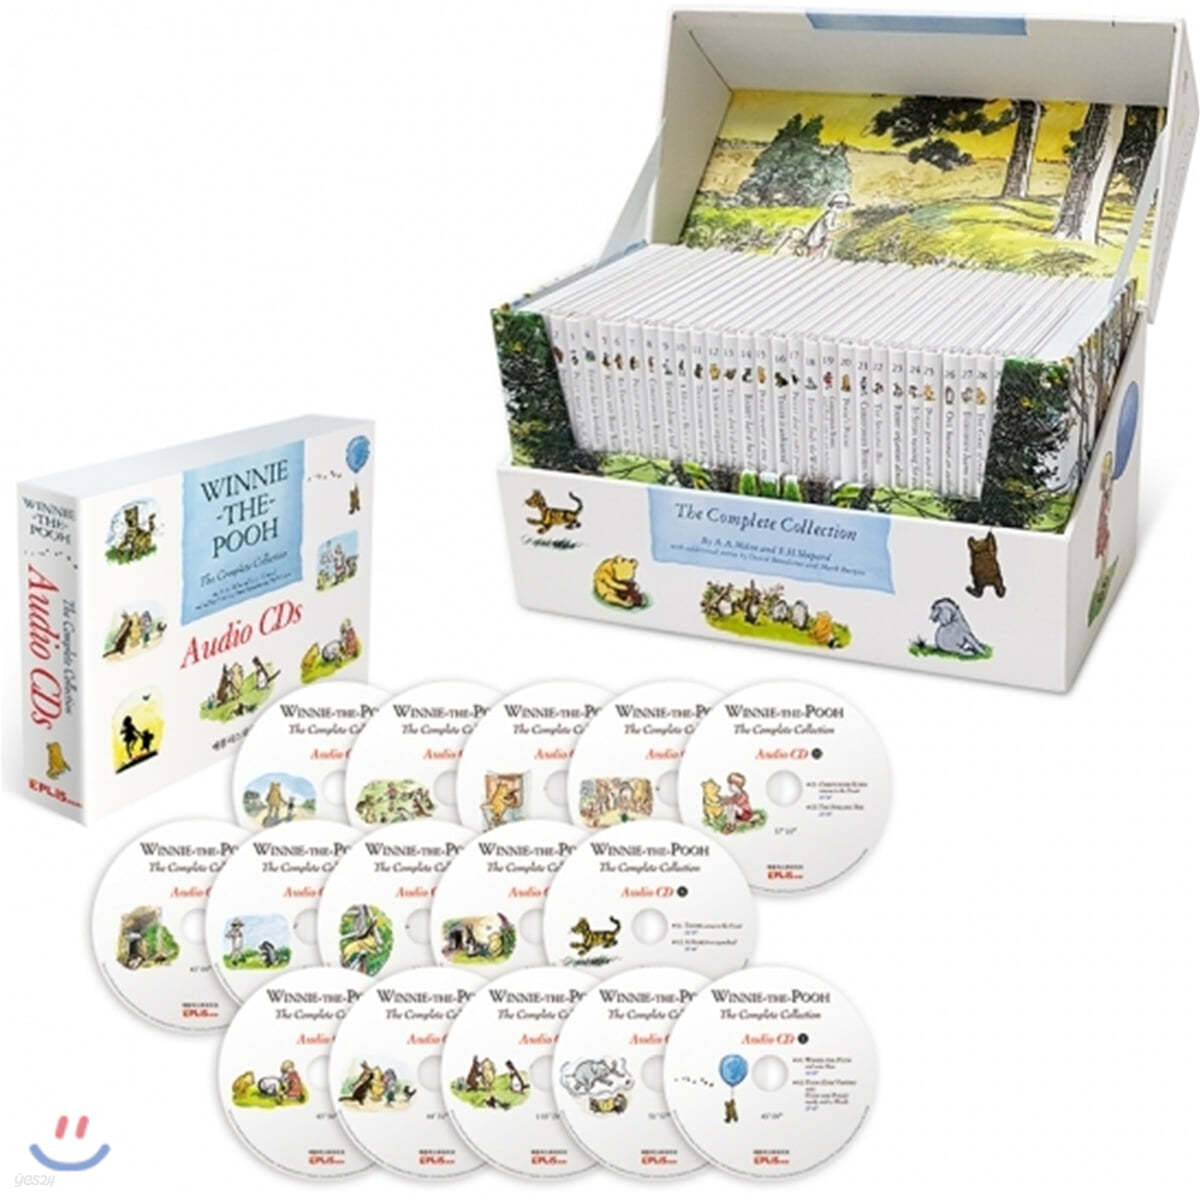 위니 더 푸 스토리북 30종 박스세트 & Audio CD Winnie-the-Pooh : The Complete Collection 